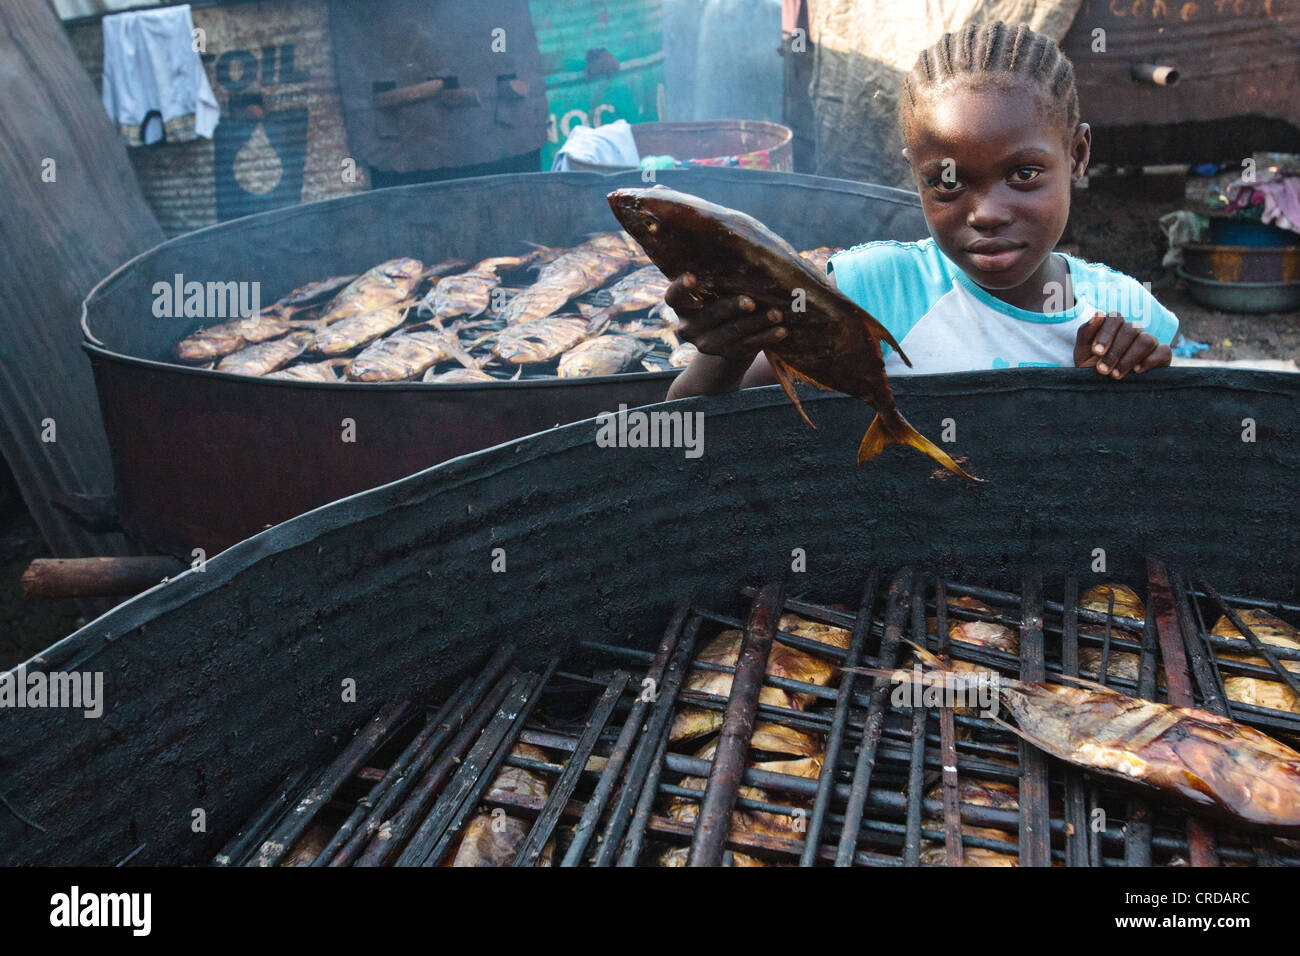 Una niña recoge un gran pescado ahumado en la barriada de West Point de Monrovia, la capital del condado de Montserrado, Liberia el lunes 2 de abril, 2012. Foto de stock